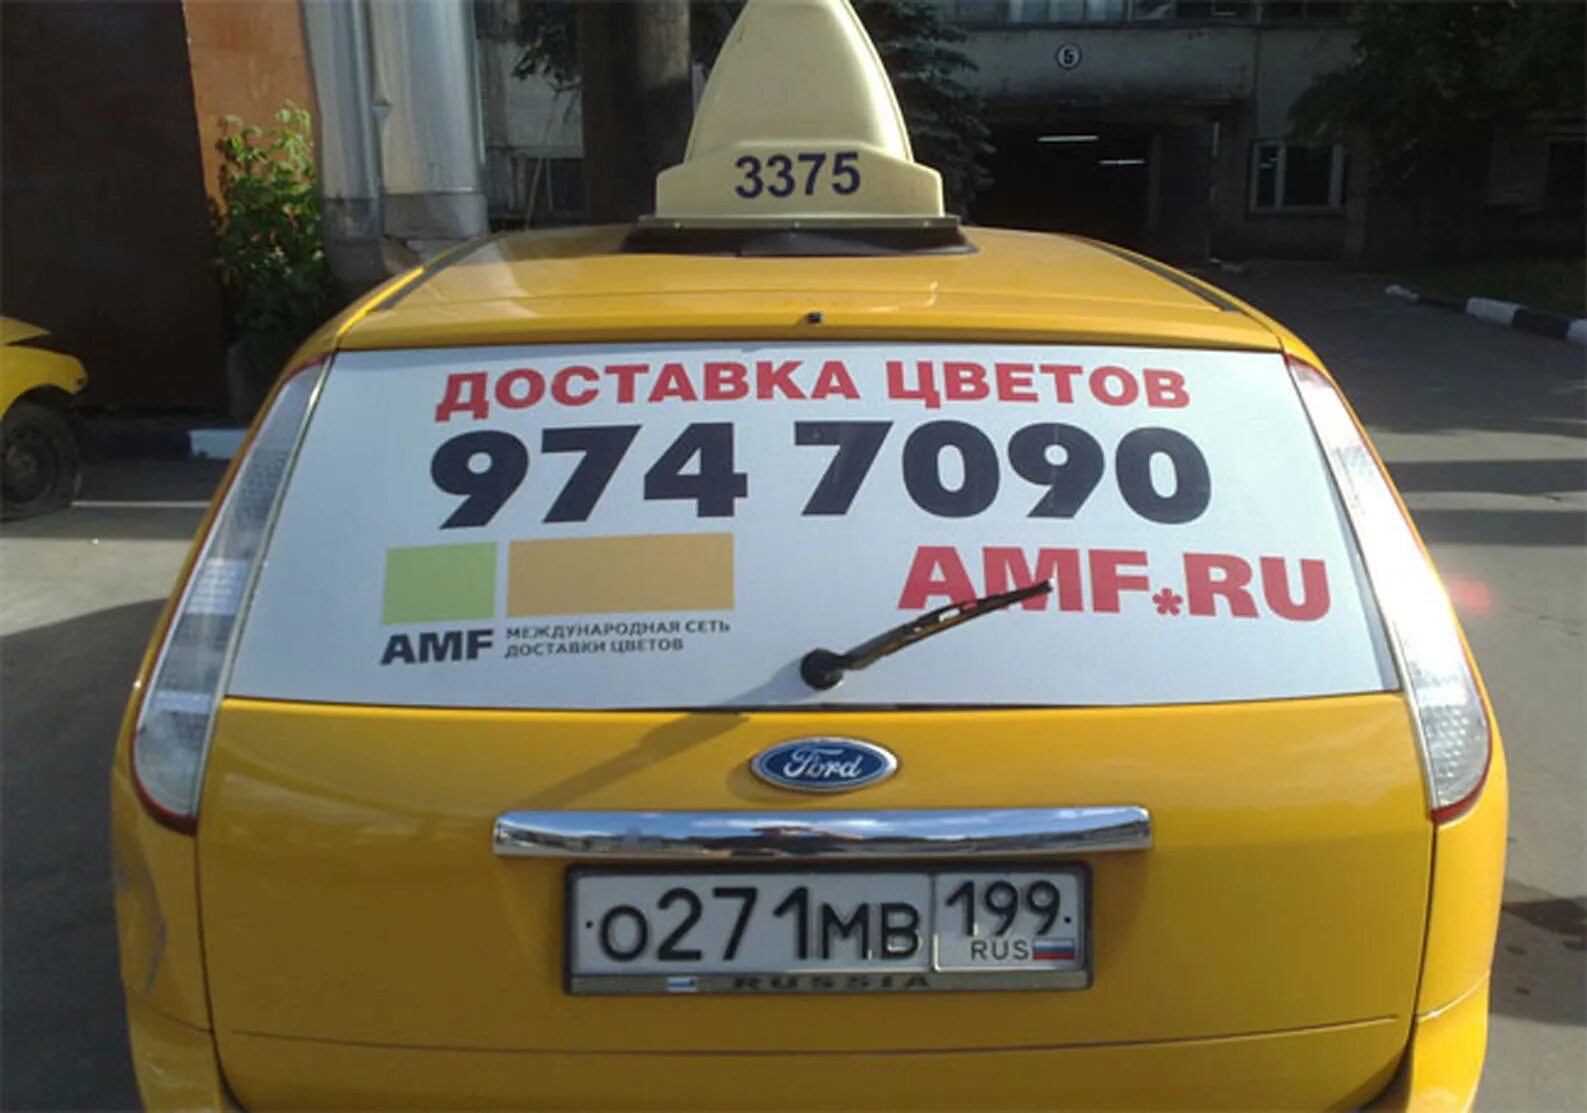 Заказать машину заранее такси. Реклама такси. Реклама такси на машине. Рекламные наклейки на авто. Реклама на заднем стекле такси.